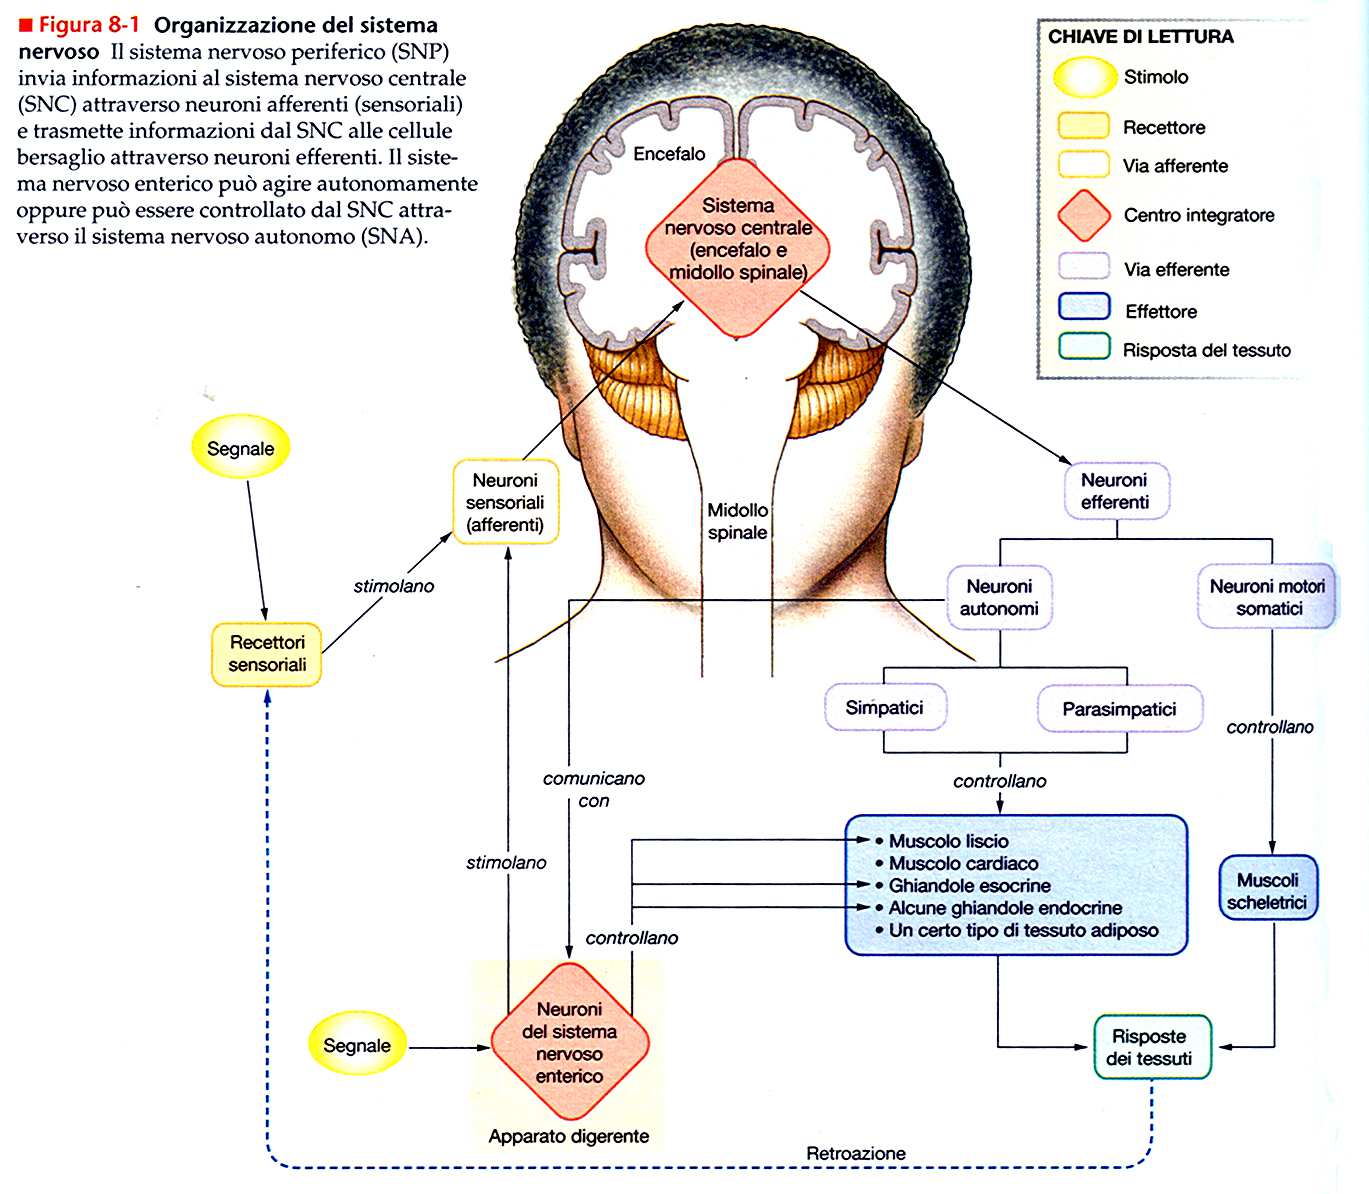 Sistema nervoso enterico Il sistema nervoso enterico, al pari del sistema nervoso centrale, è organizzato come un sistema integratore indipendente.